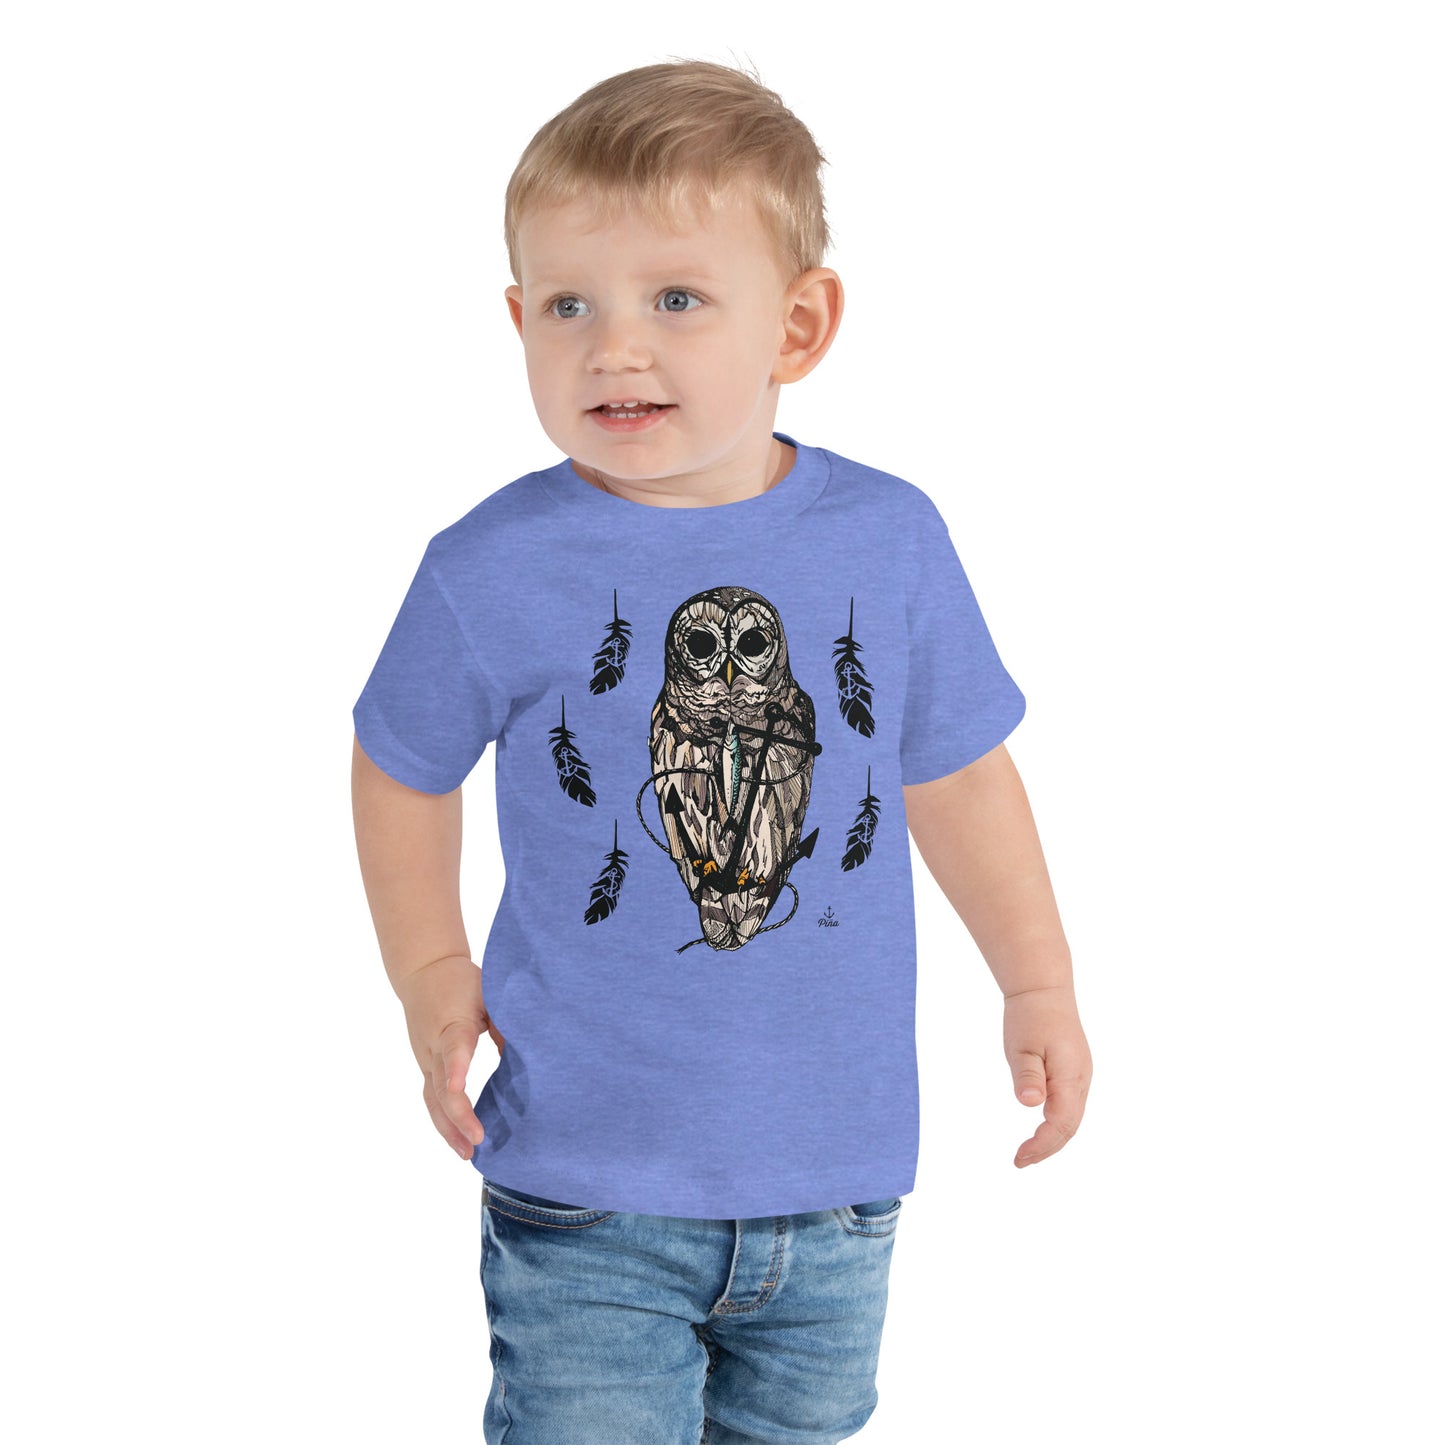 Owl & Anchor Toddler Tee